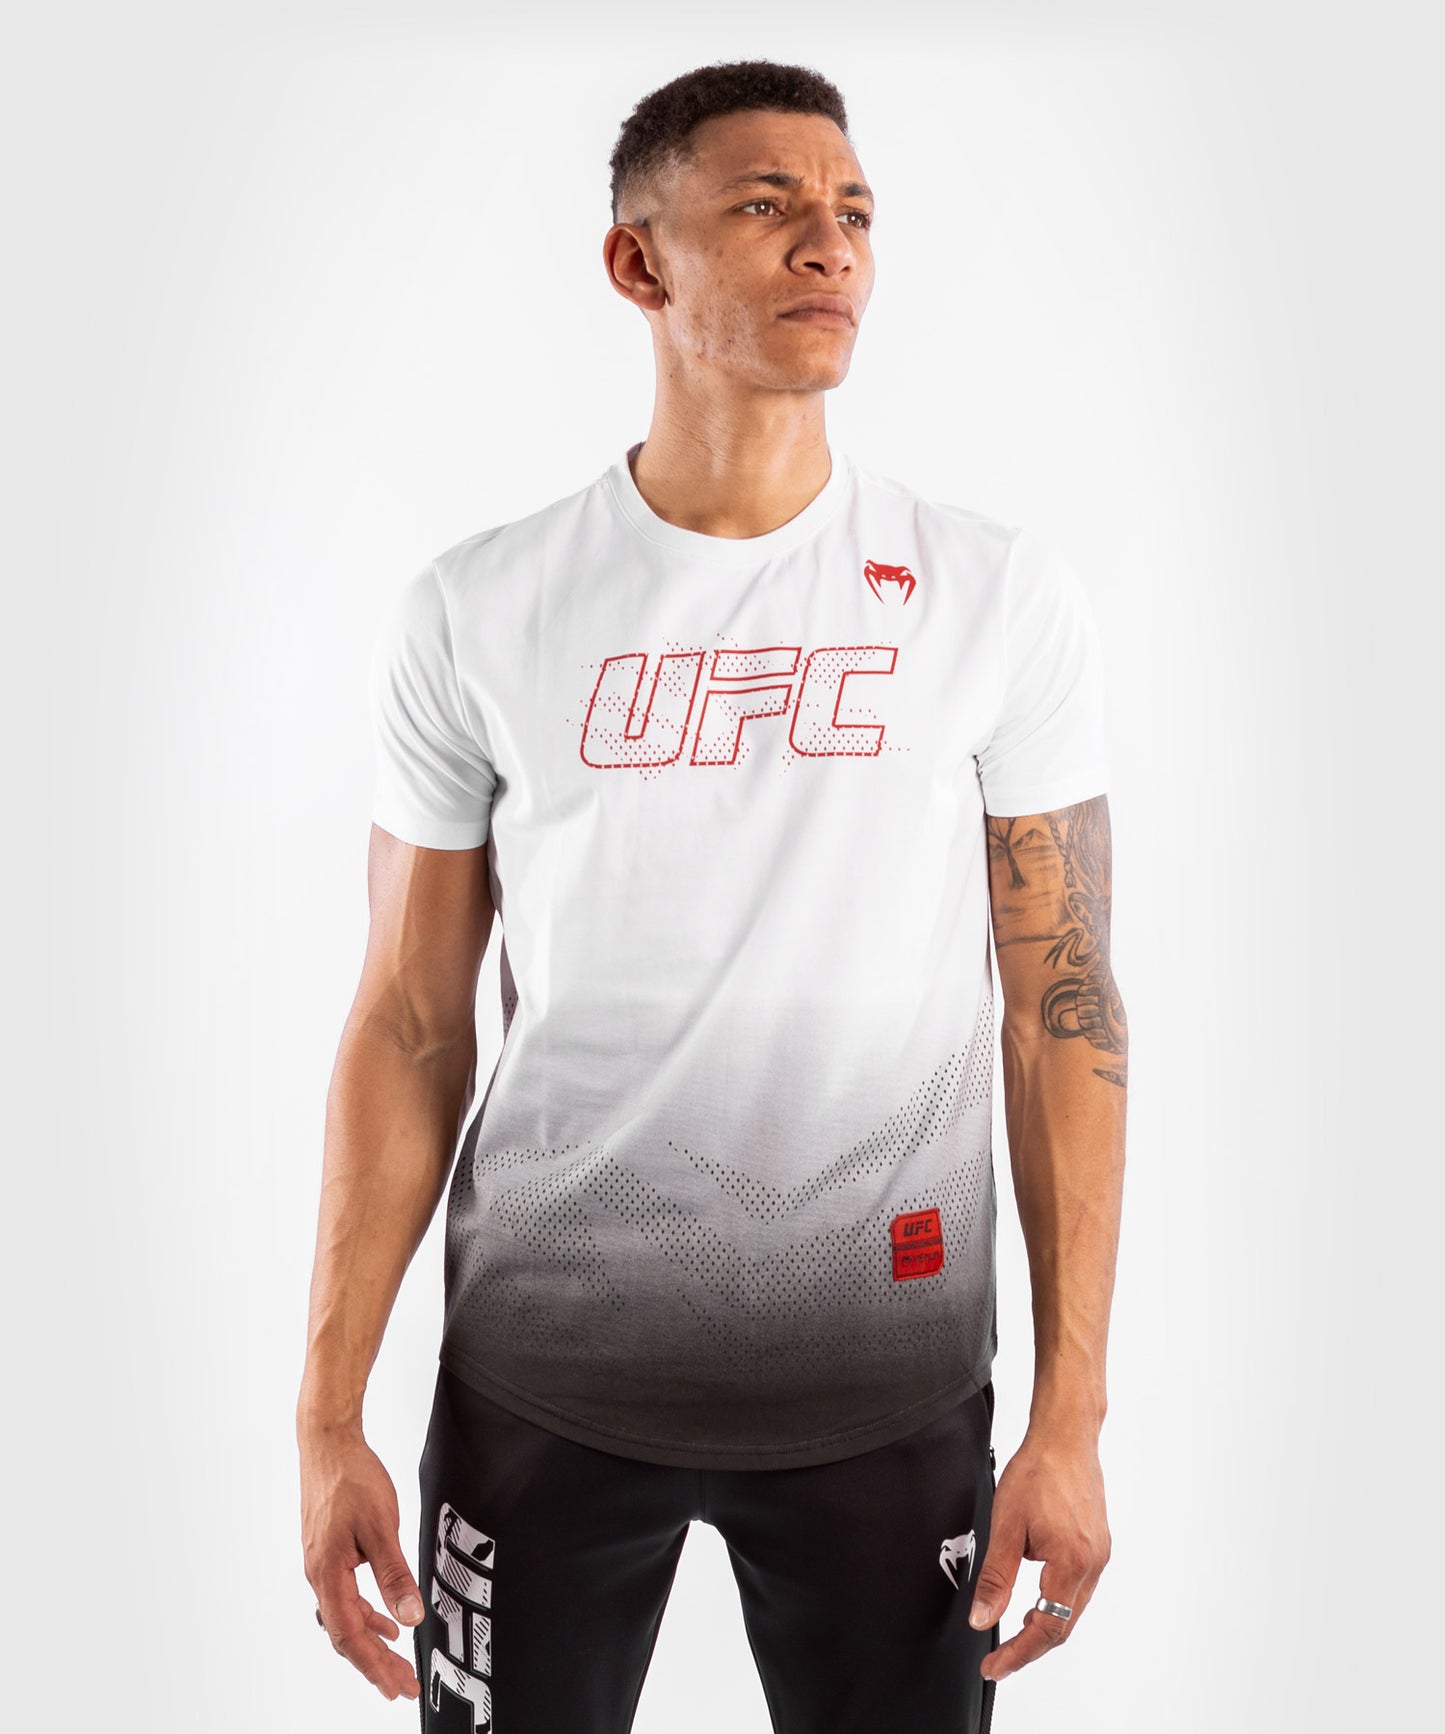 T-shirt UFC Venum Authentic Fight Week Men´s 2.0 white